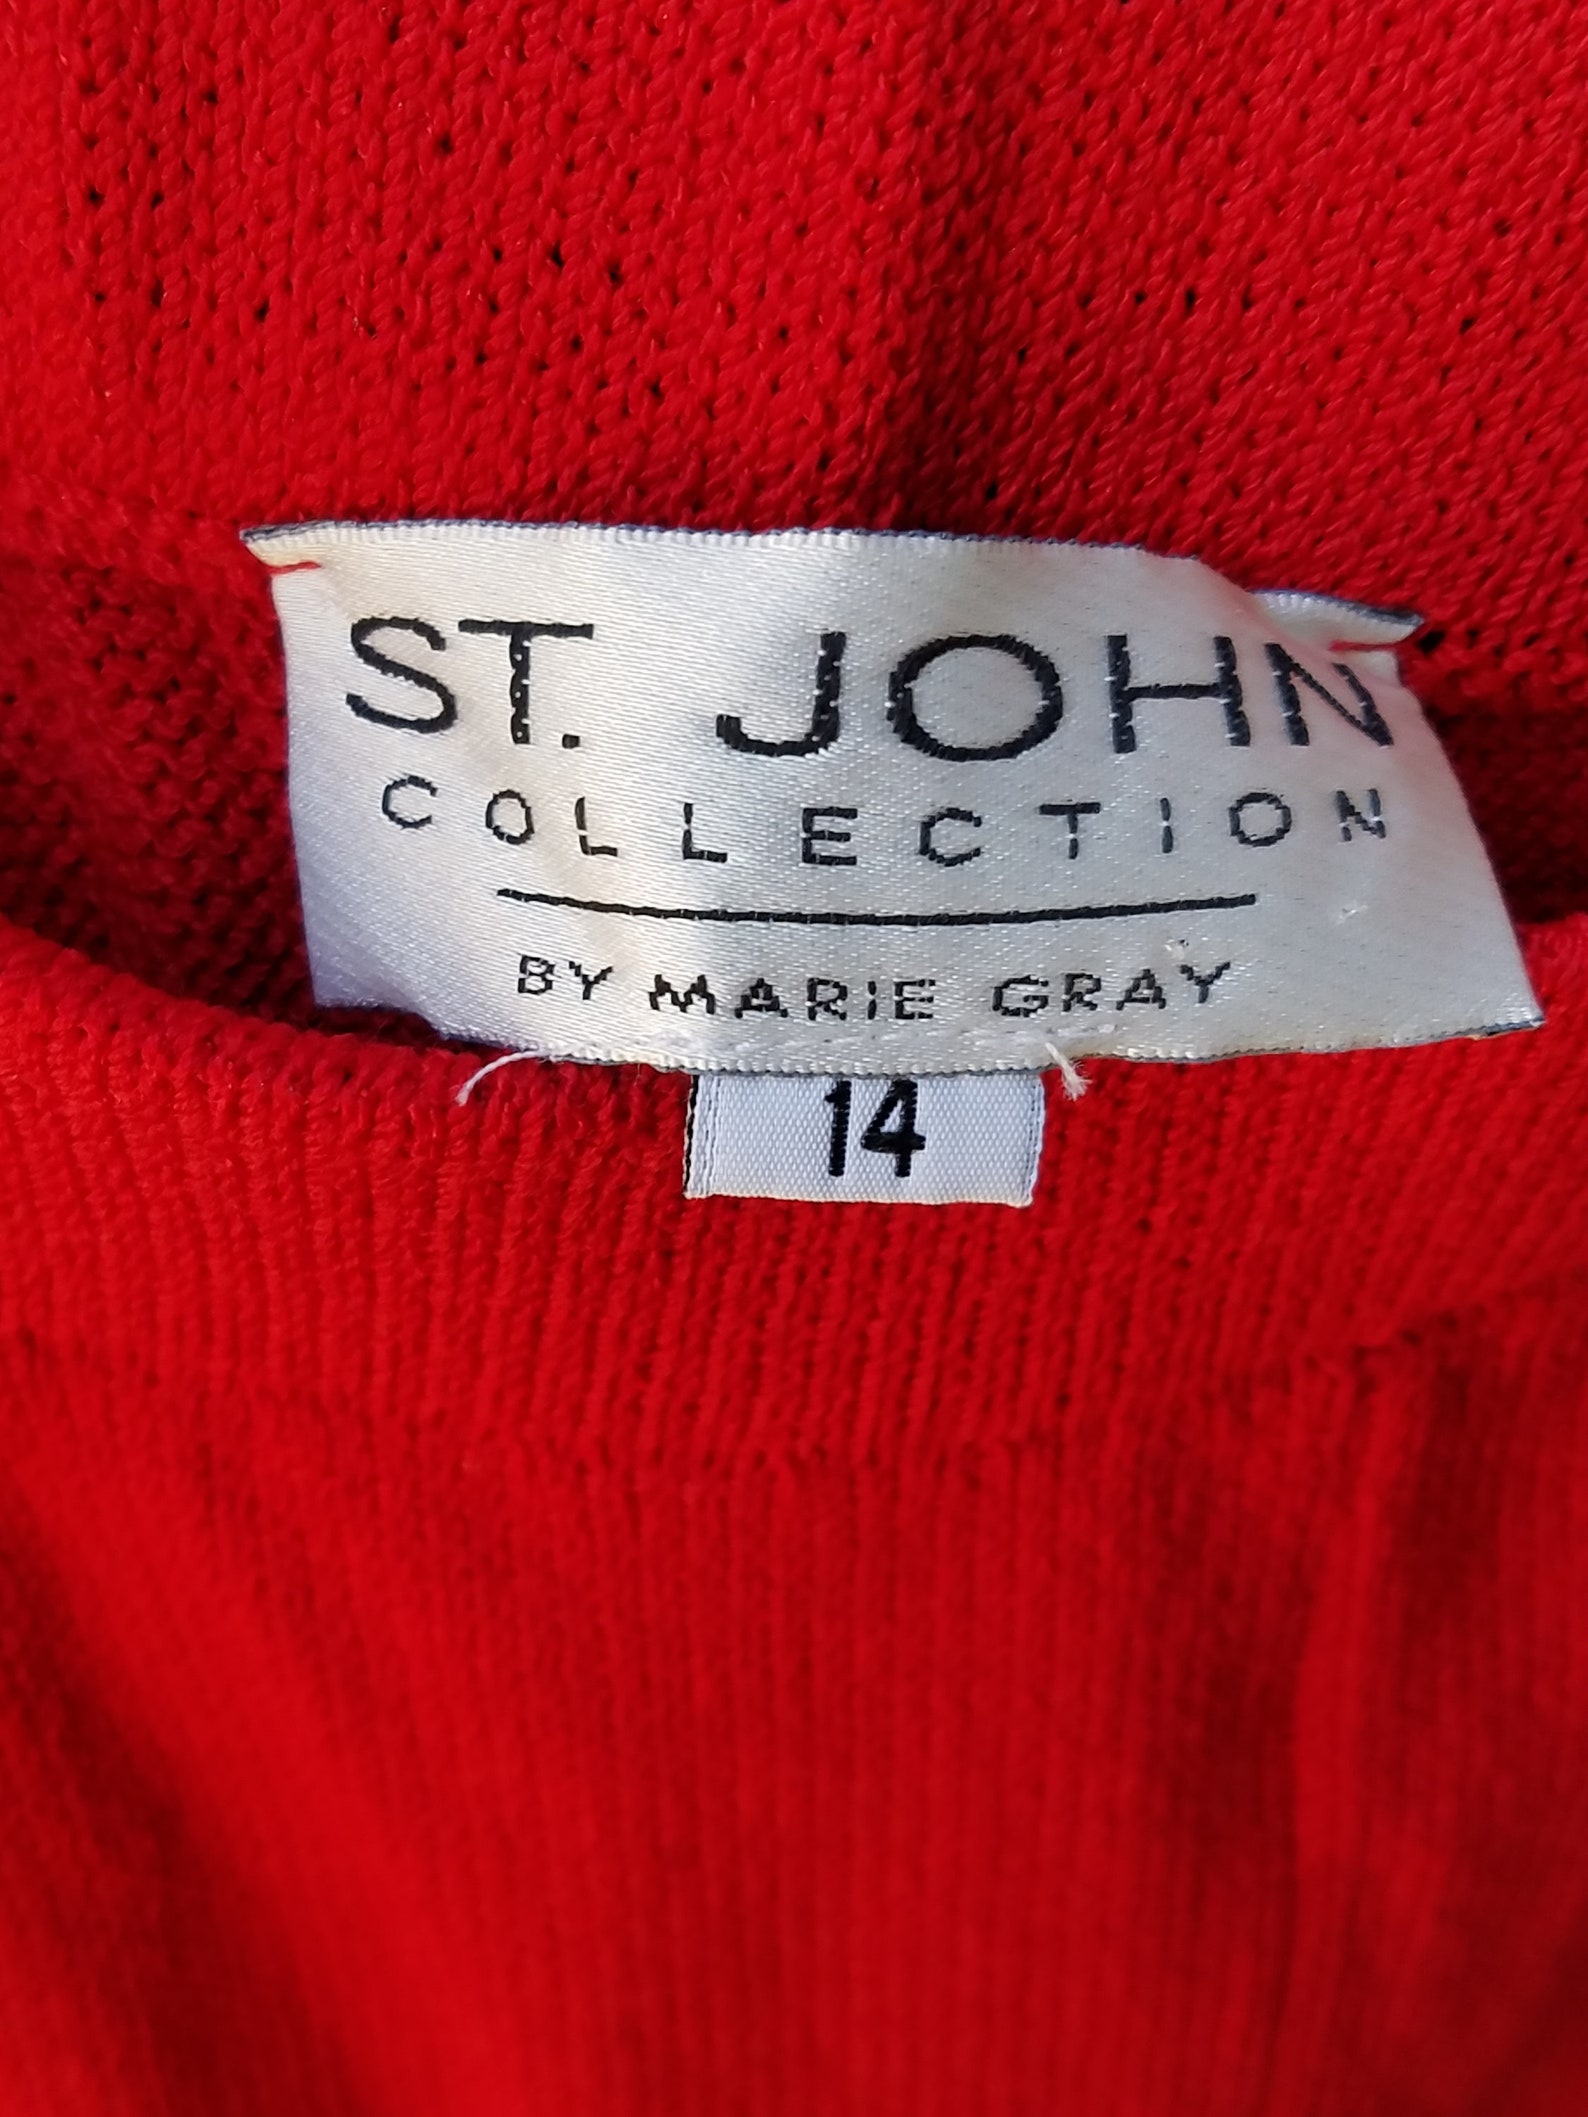 Vintage St John Collection St John Original Vintage Knit | Etsy